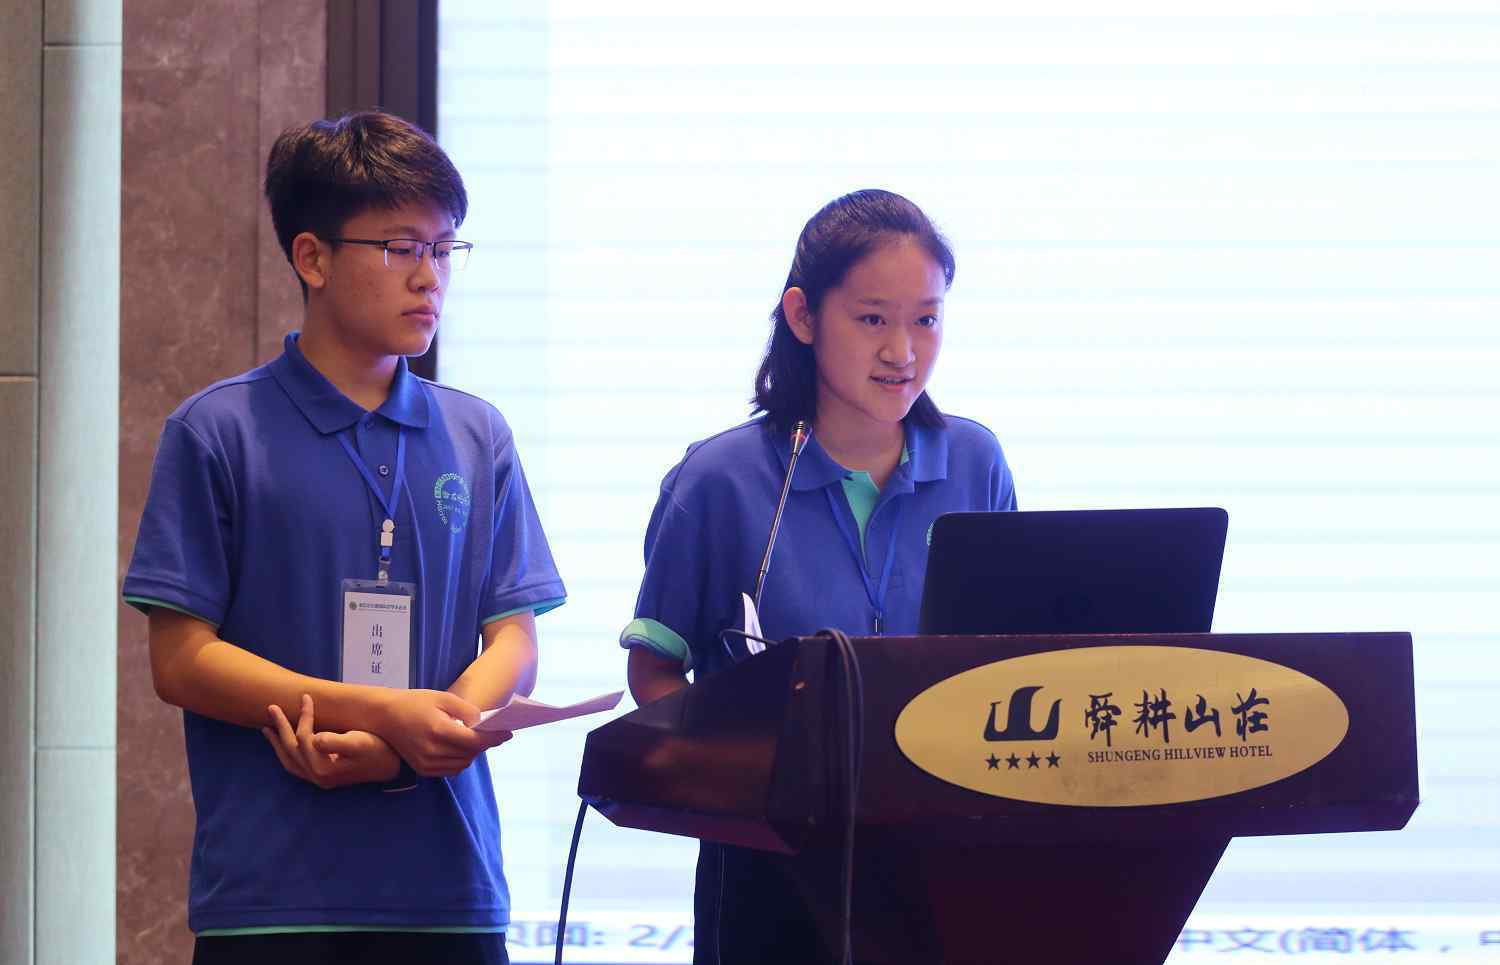 中国最大的中学生社区 全国媒体集体“围观” 这次是因为首届“海右论坛暨国际中学生会议”